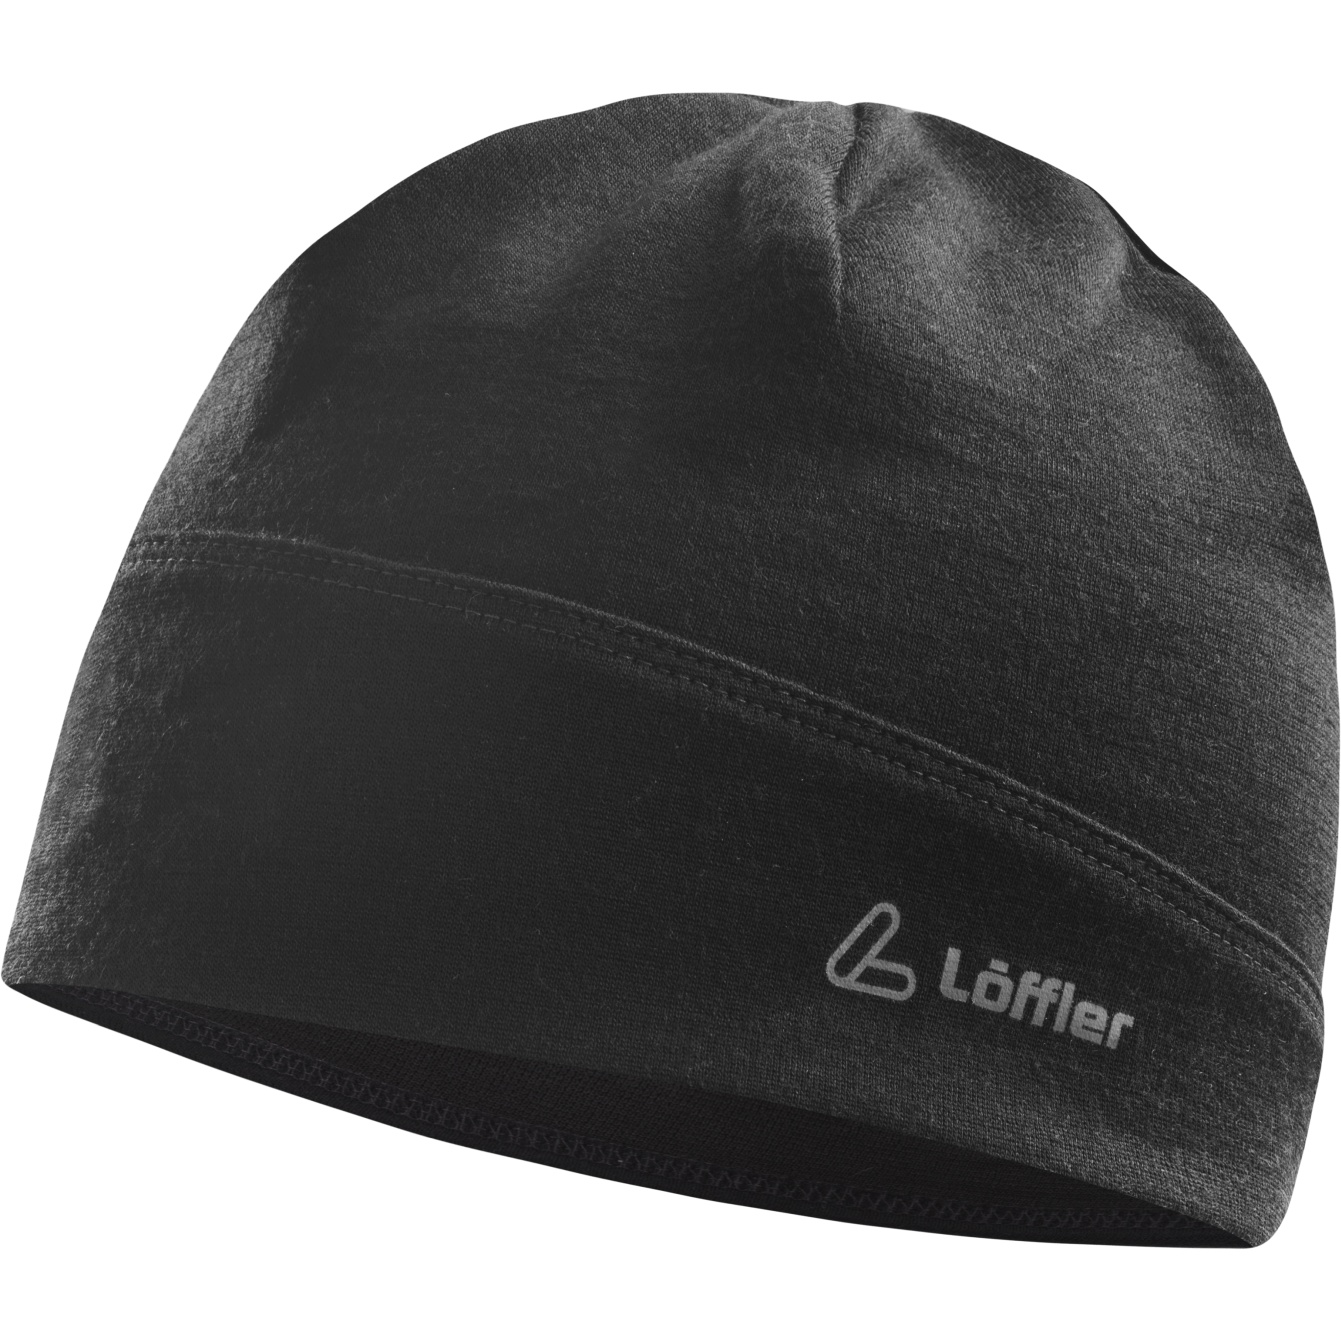 Löffler Merino Wool Hat - black 990 | BIKE24